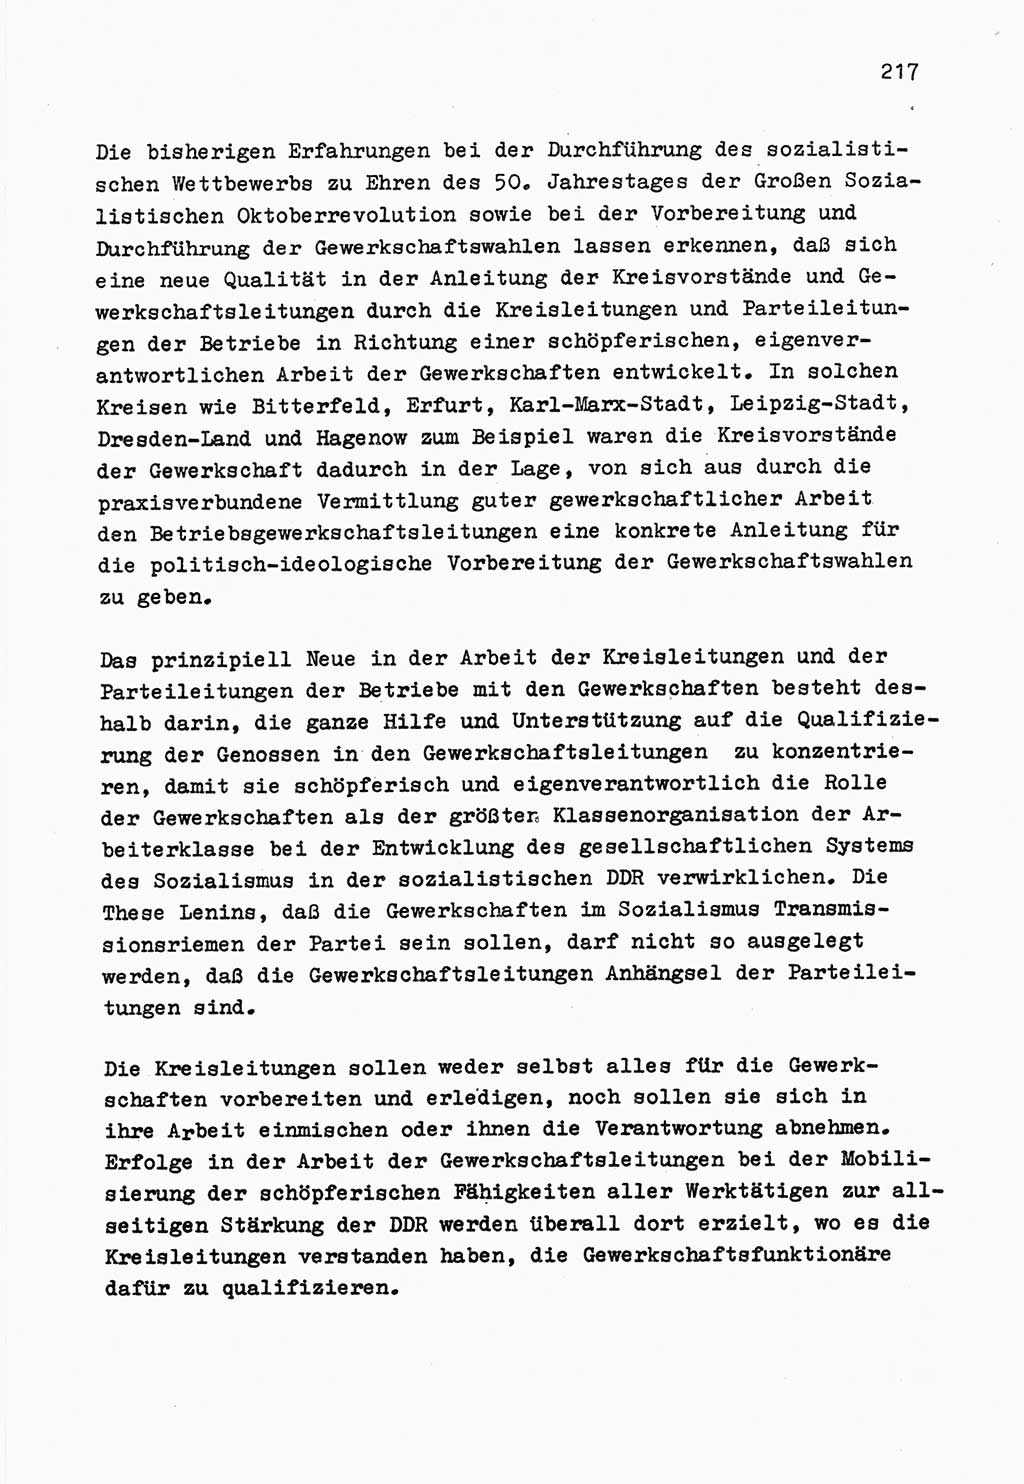 Zu Fragen der Parteiarbeit [Sozialistische Einheitspartei Deutschlands (SED) Deutsche Demokratische Republik (DDR)] 1979, Seite 217 (Fr. PA SED DDR 1979, S. 217)